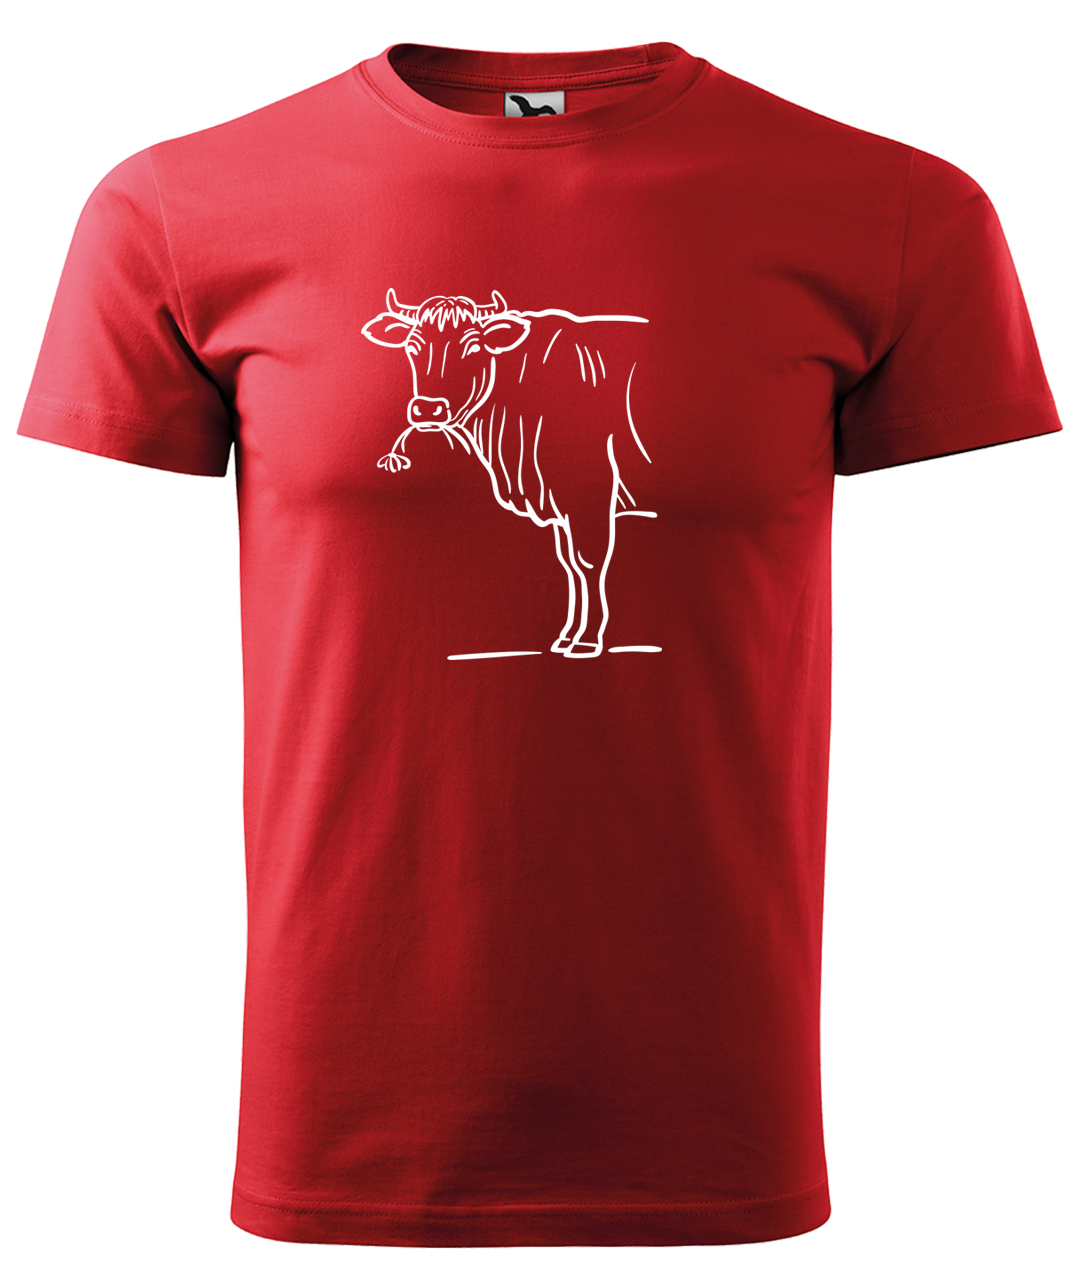 Dětské tričko s krávou - Býk Velikost: 4 roky / 110 cm, Barva: Červená (07), Délka rukávu: Krátký rukáv